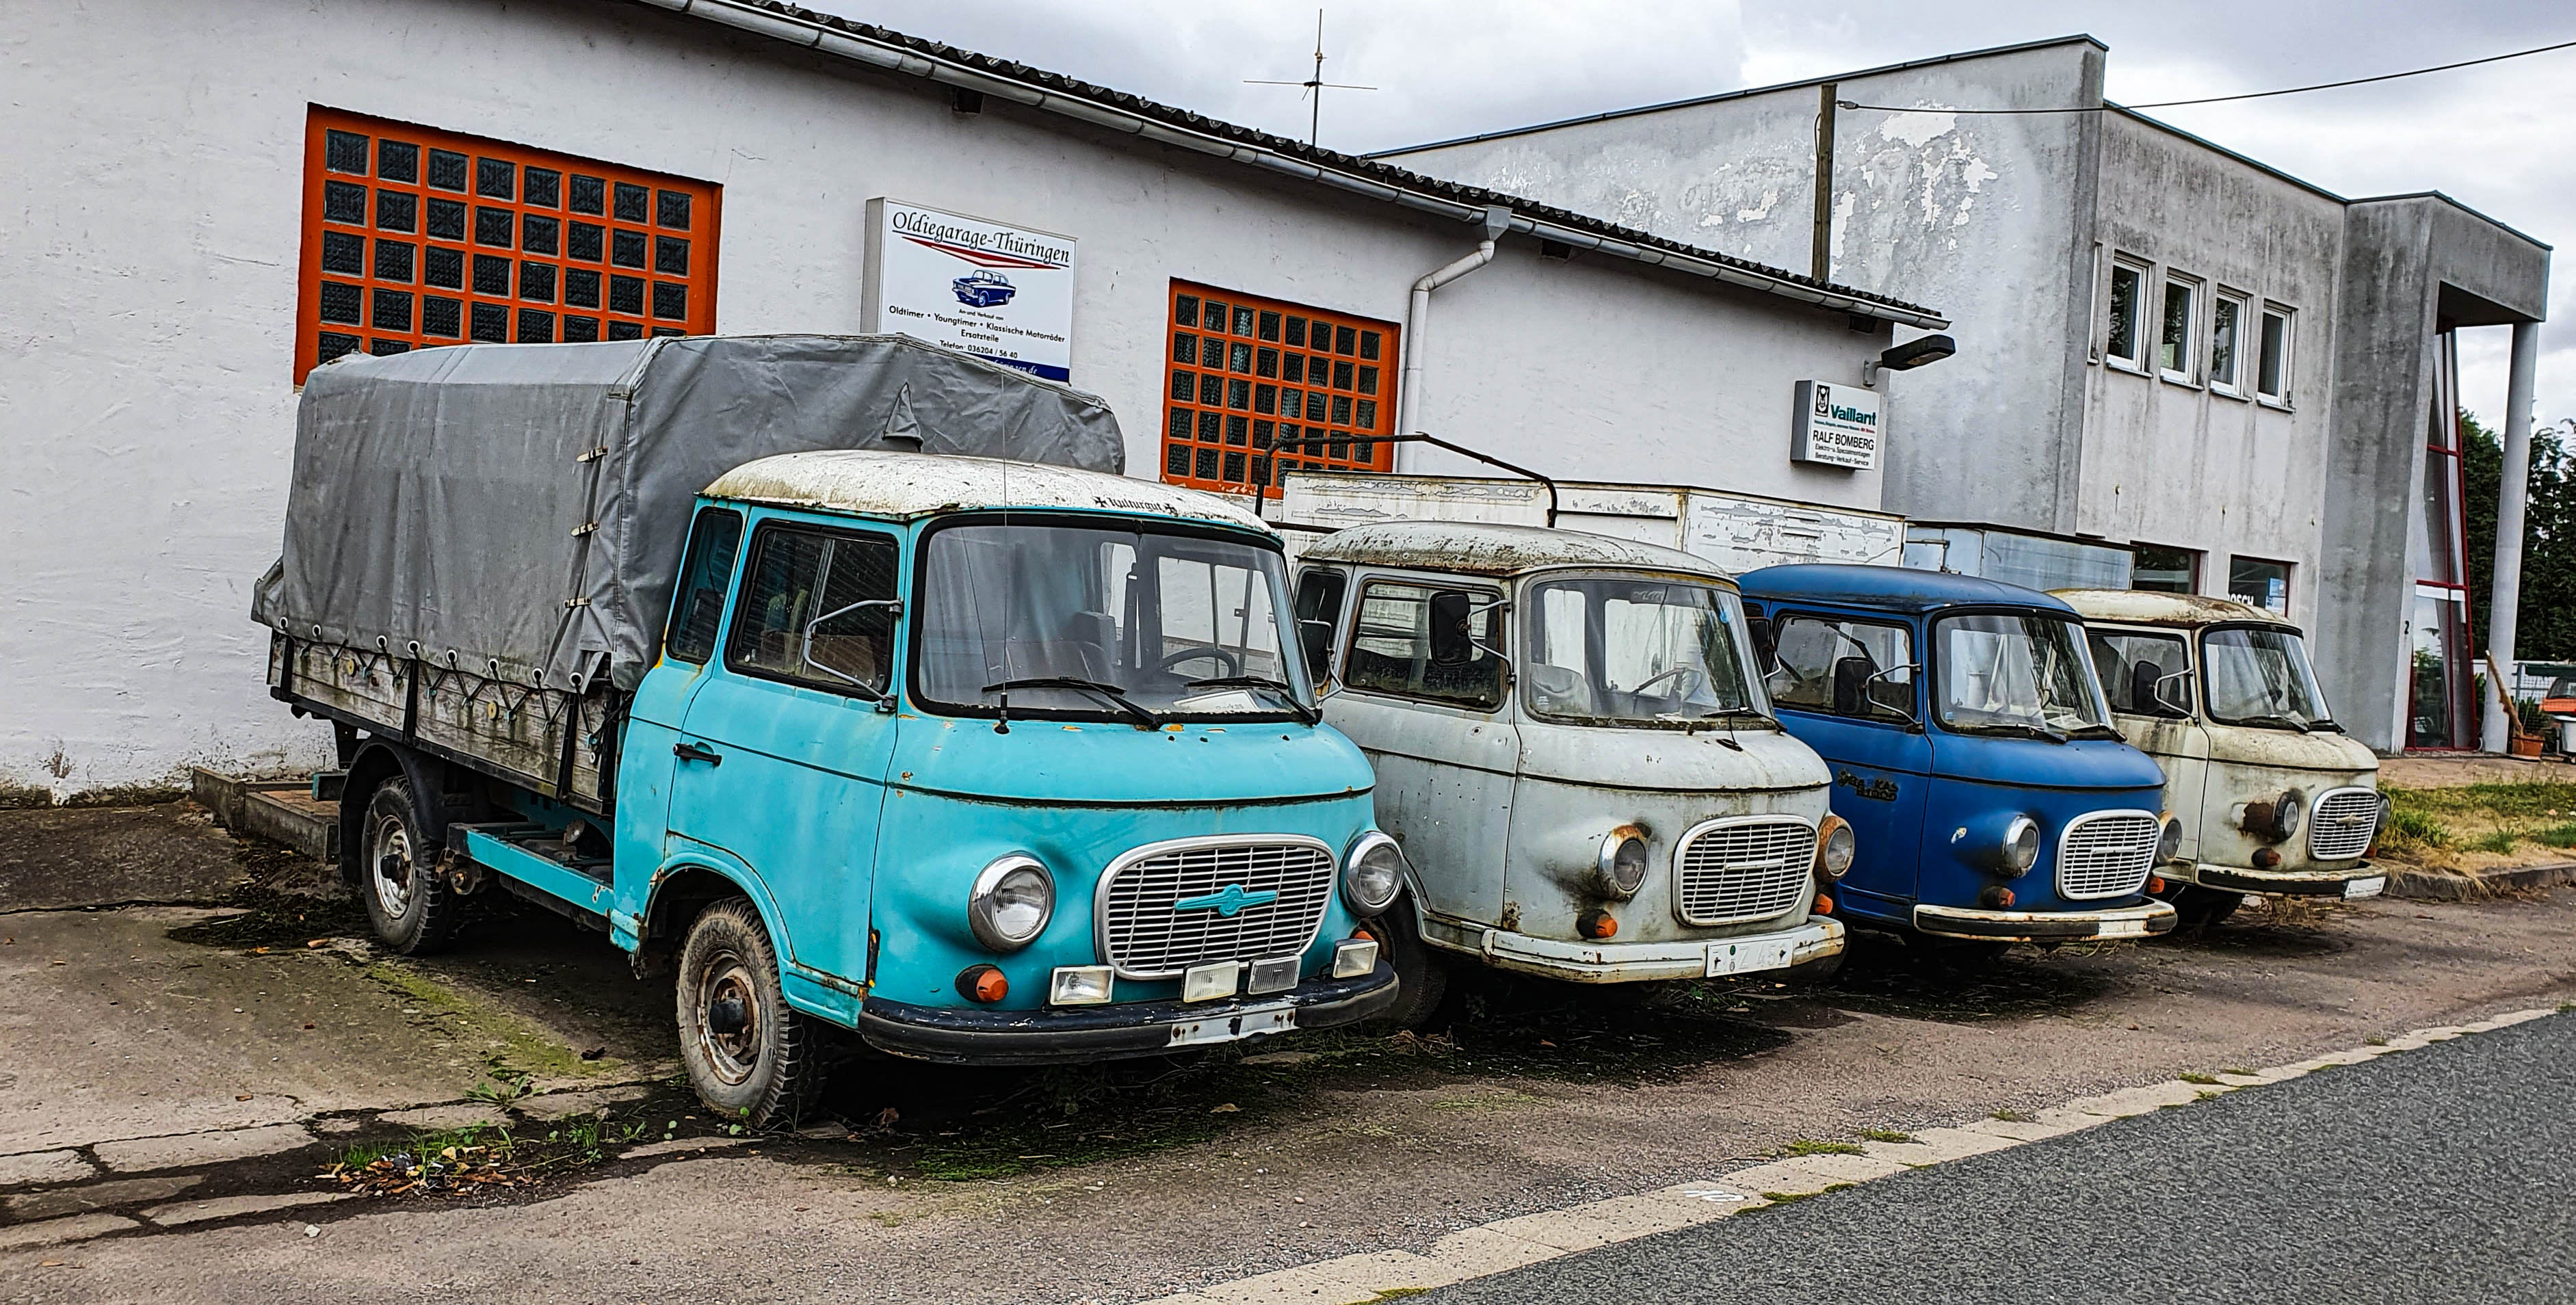 de Oldiegarage Thüringen, voor de deur staan diverse oldtimer vrachtwagens geparkeerd